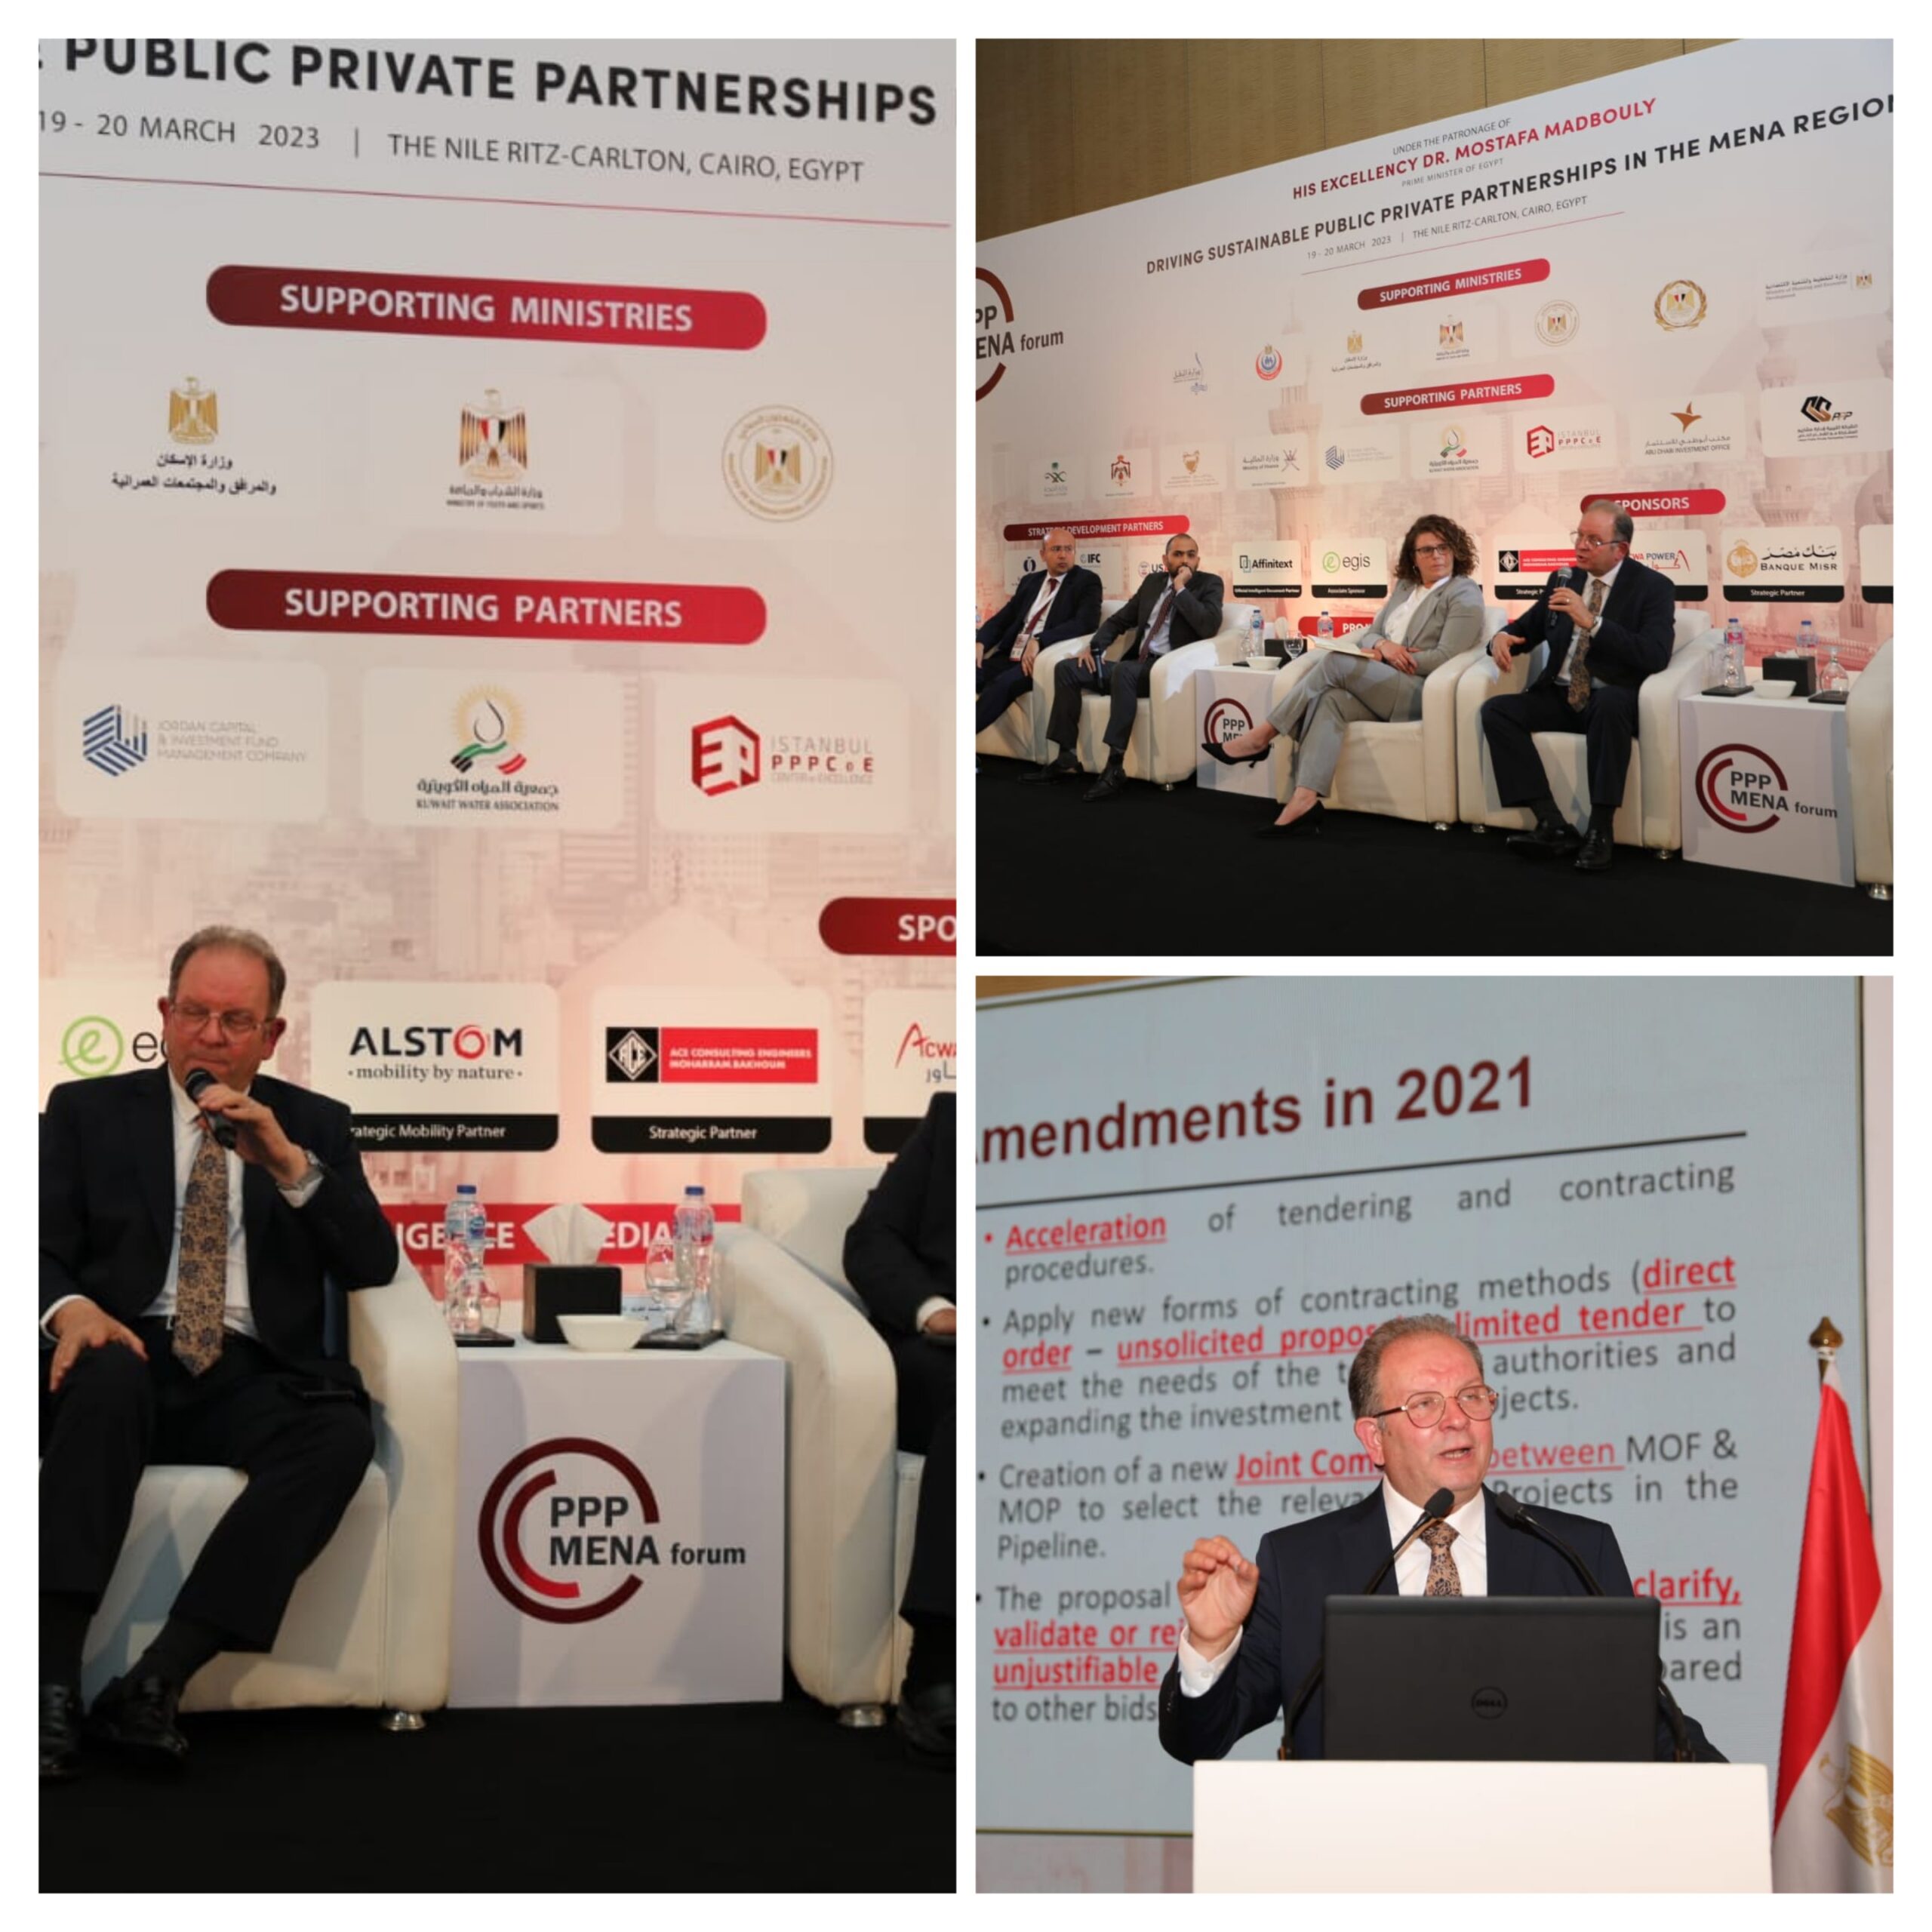 حنورة : مصر نموذج رائد للشراكة بين القطاعين العام والخاص بالشرق الأوسط وشمال أفريقيا